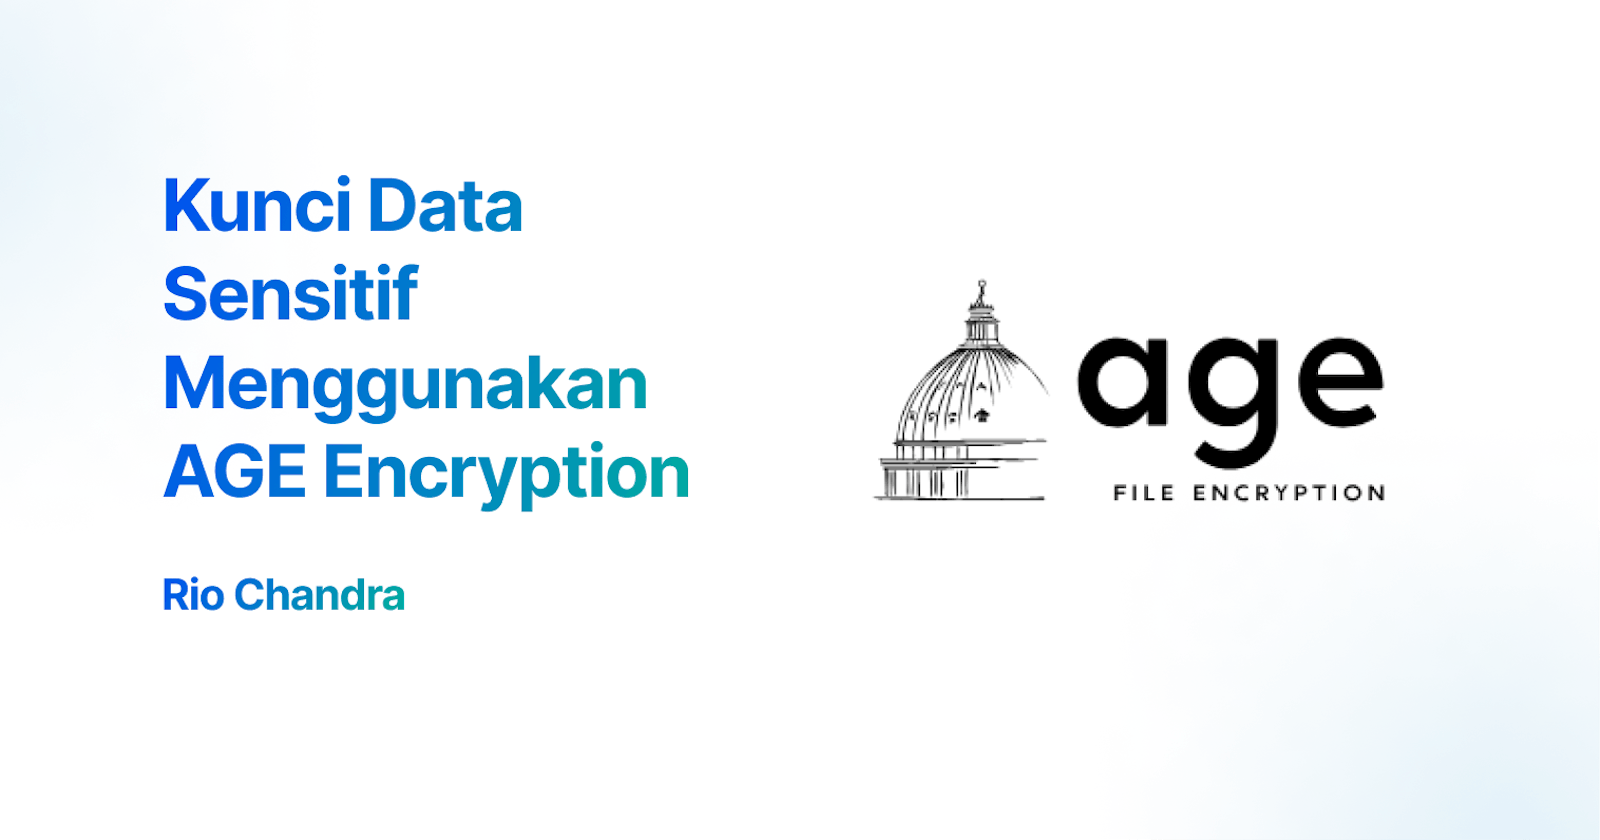 Kunci Data Sensitif Menggunakan AGE Encryption